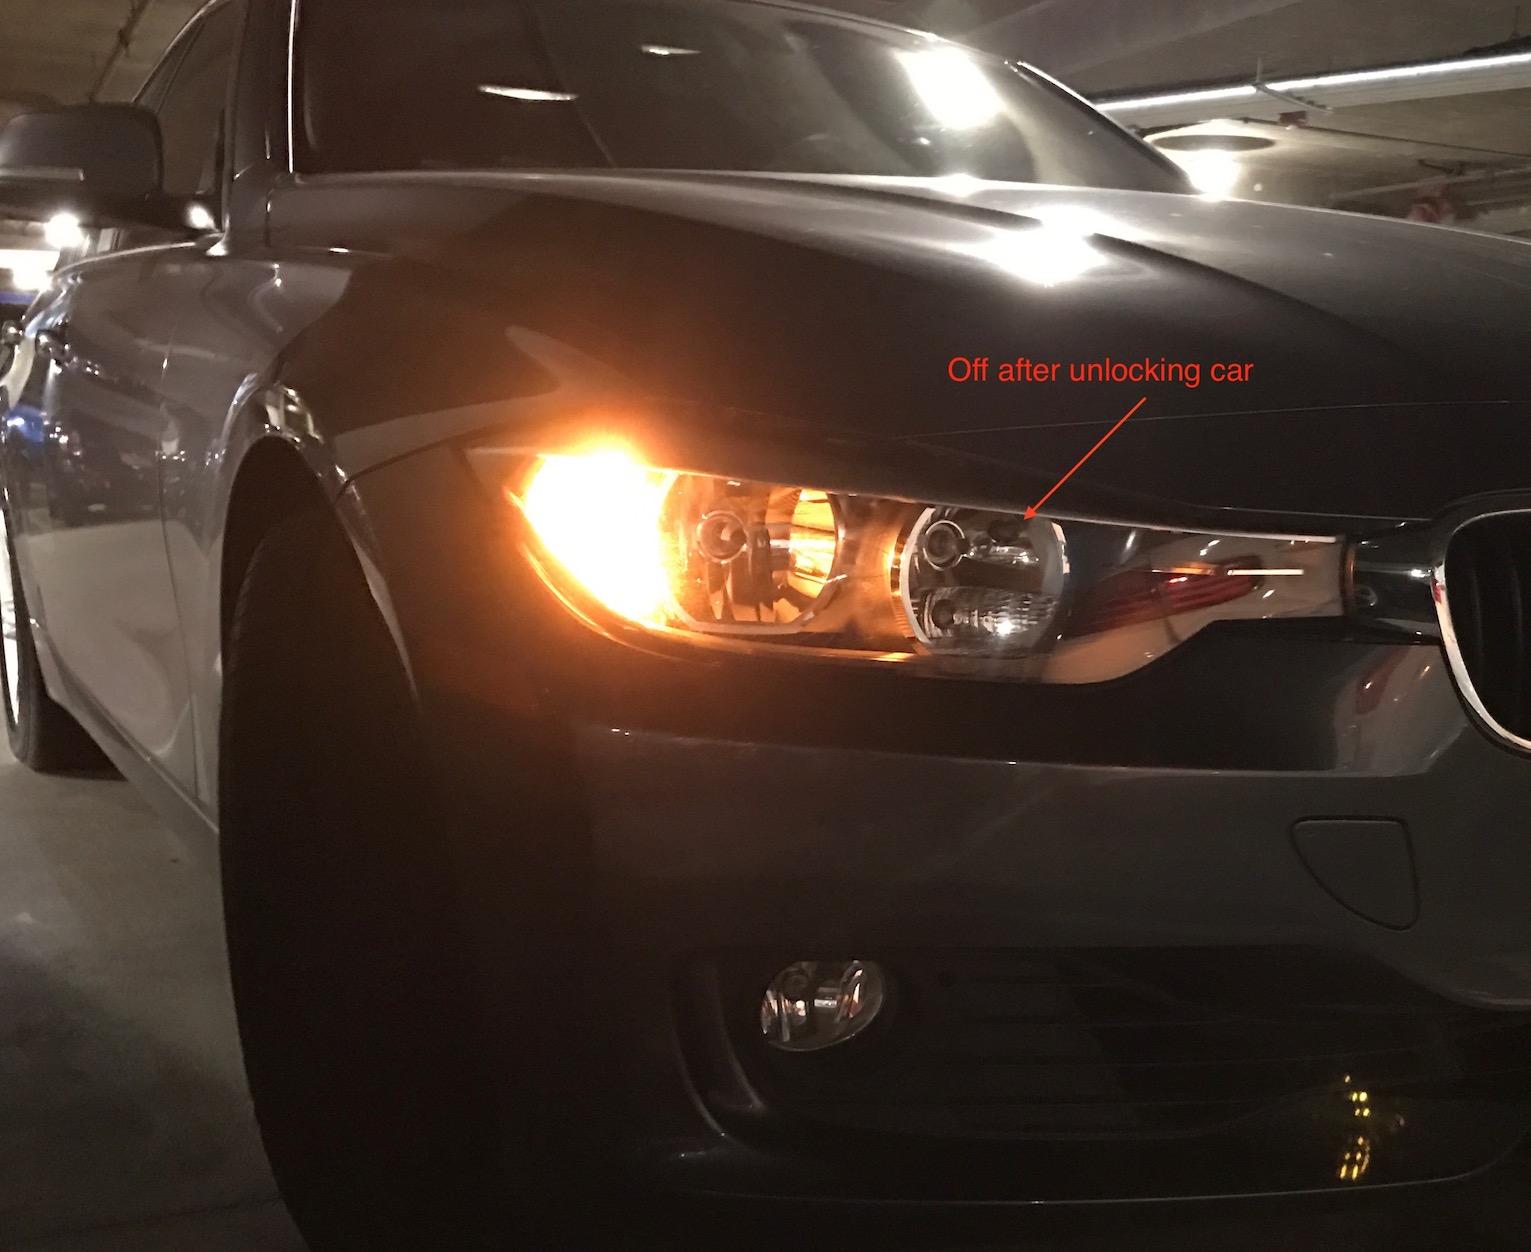 YANBIN Qbinbin Store Links/&RECHTS Rauchlinse hinten Bumper Reflektor Schwanzbremse Parking WARNUNG Hören Sie laufend licht fit für BMW F30 F31 F32 F33 3 4 Serie